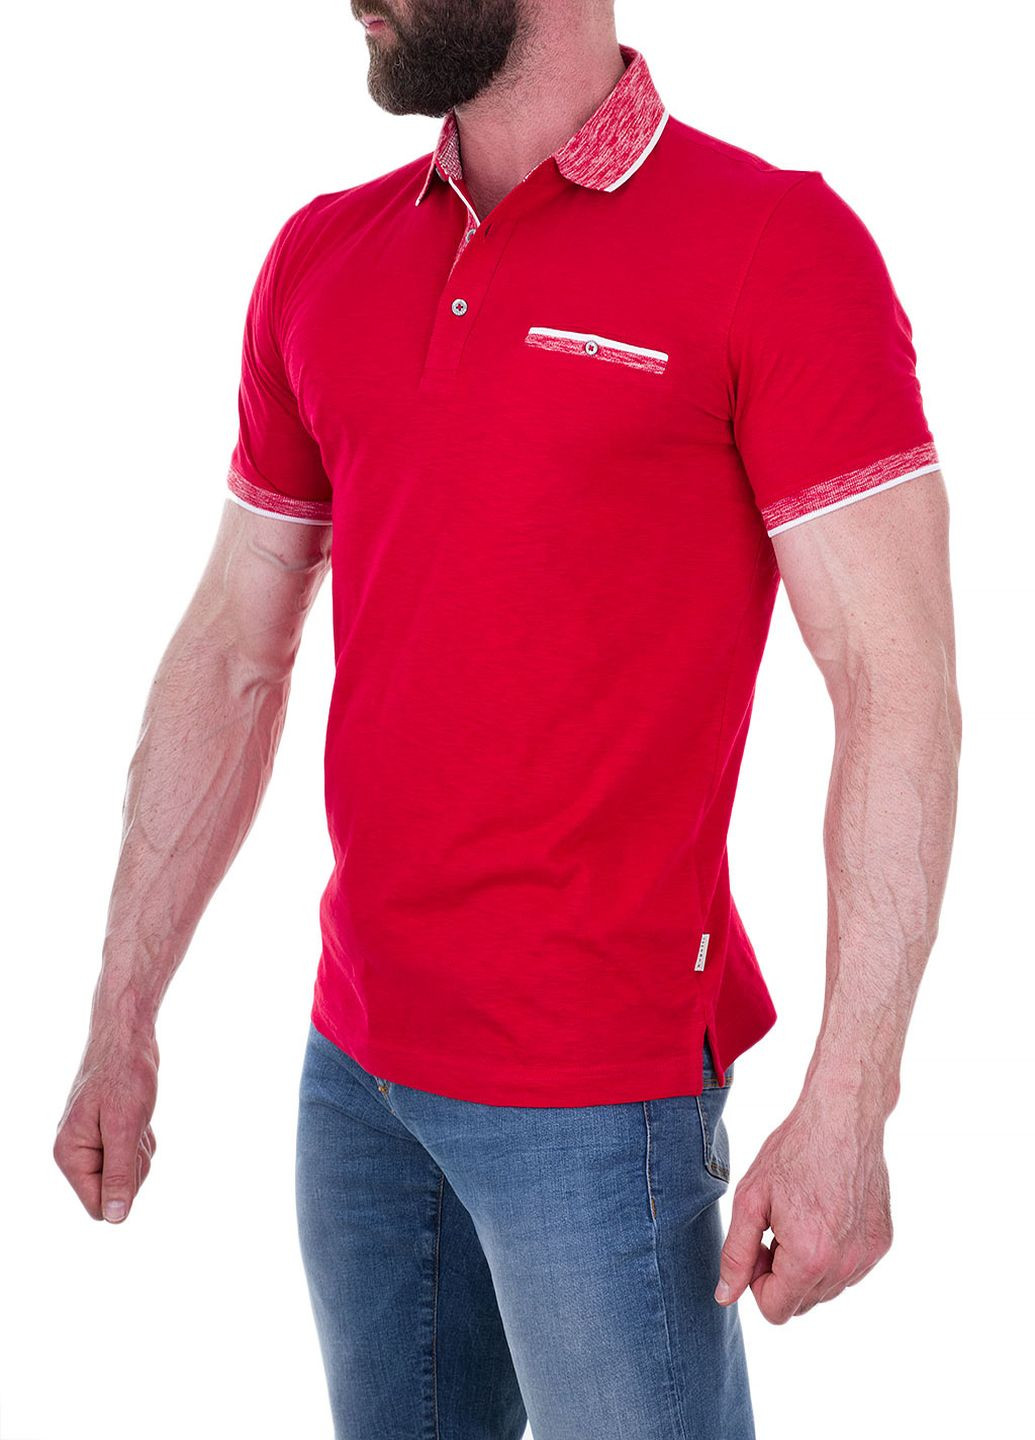 Красная футболка-поло для мужчин Bugatti однотонная